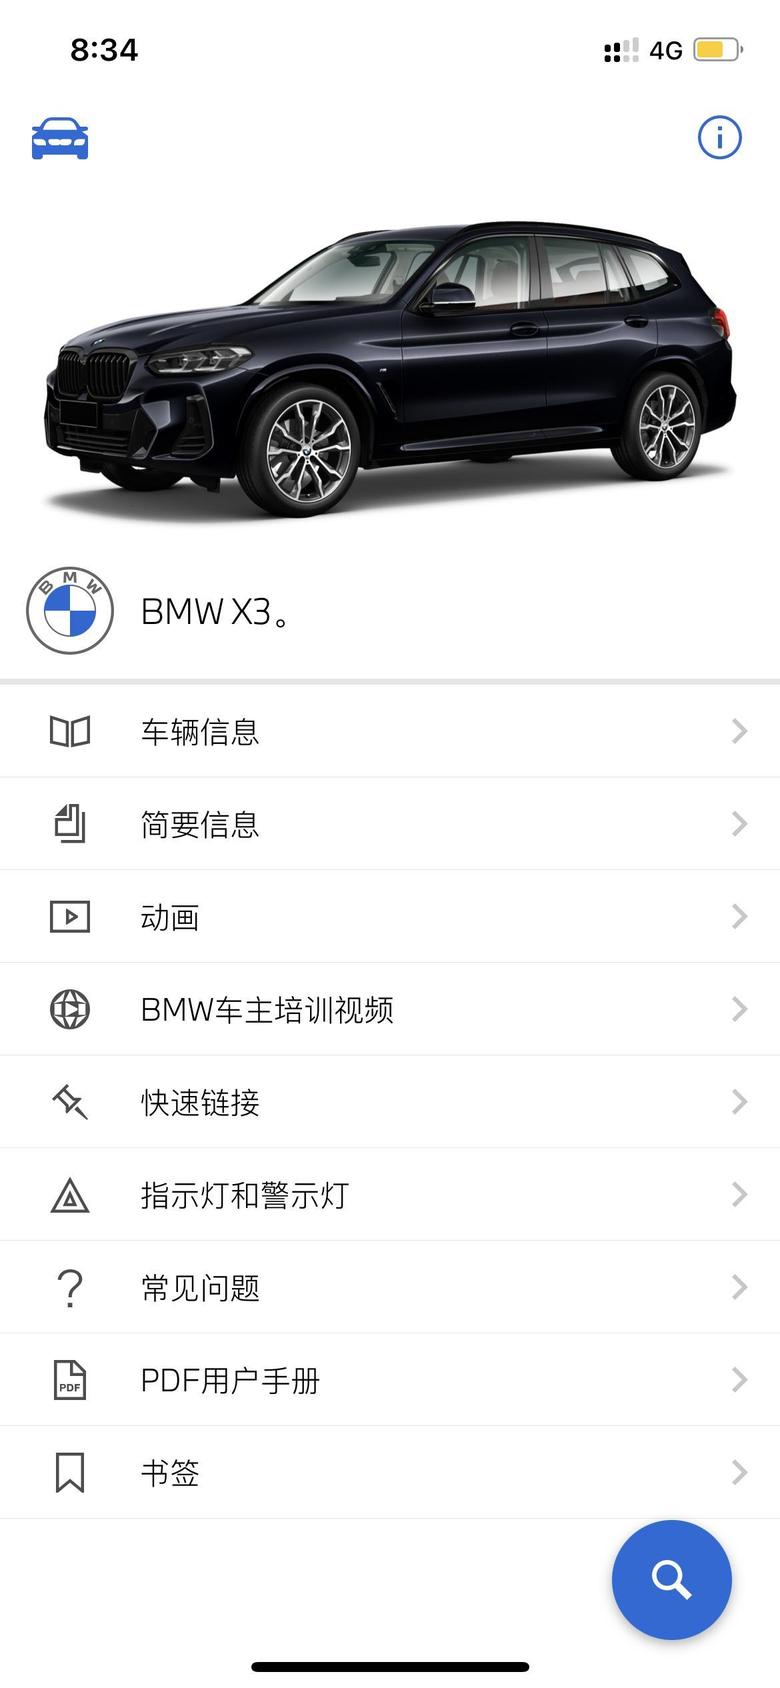 宝马x3 宝马驾驶指南已经可以下载了，不知道多久能到店，等车等的难熬